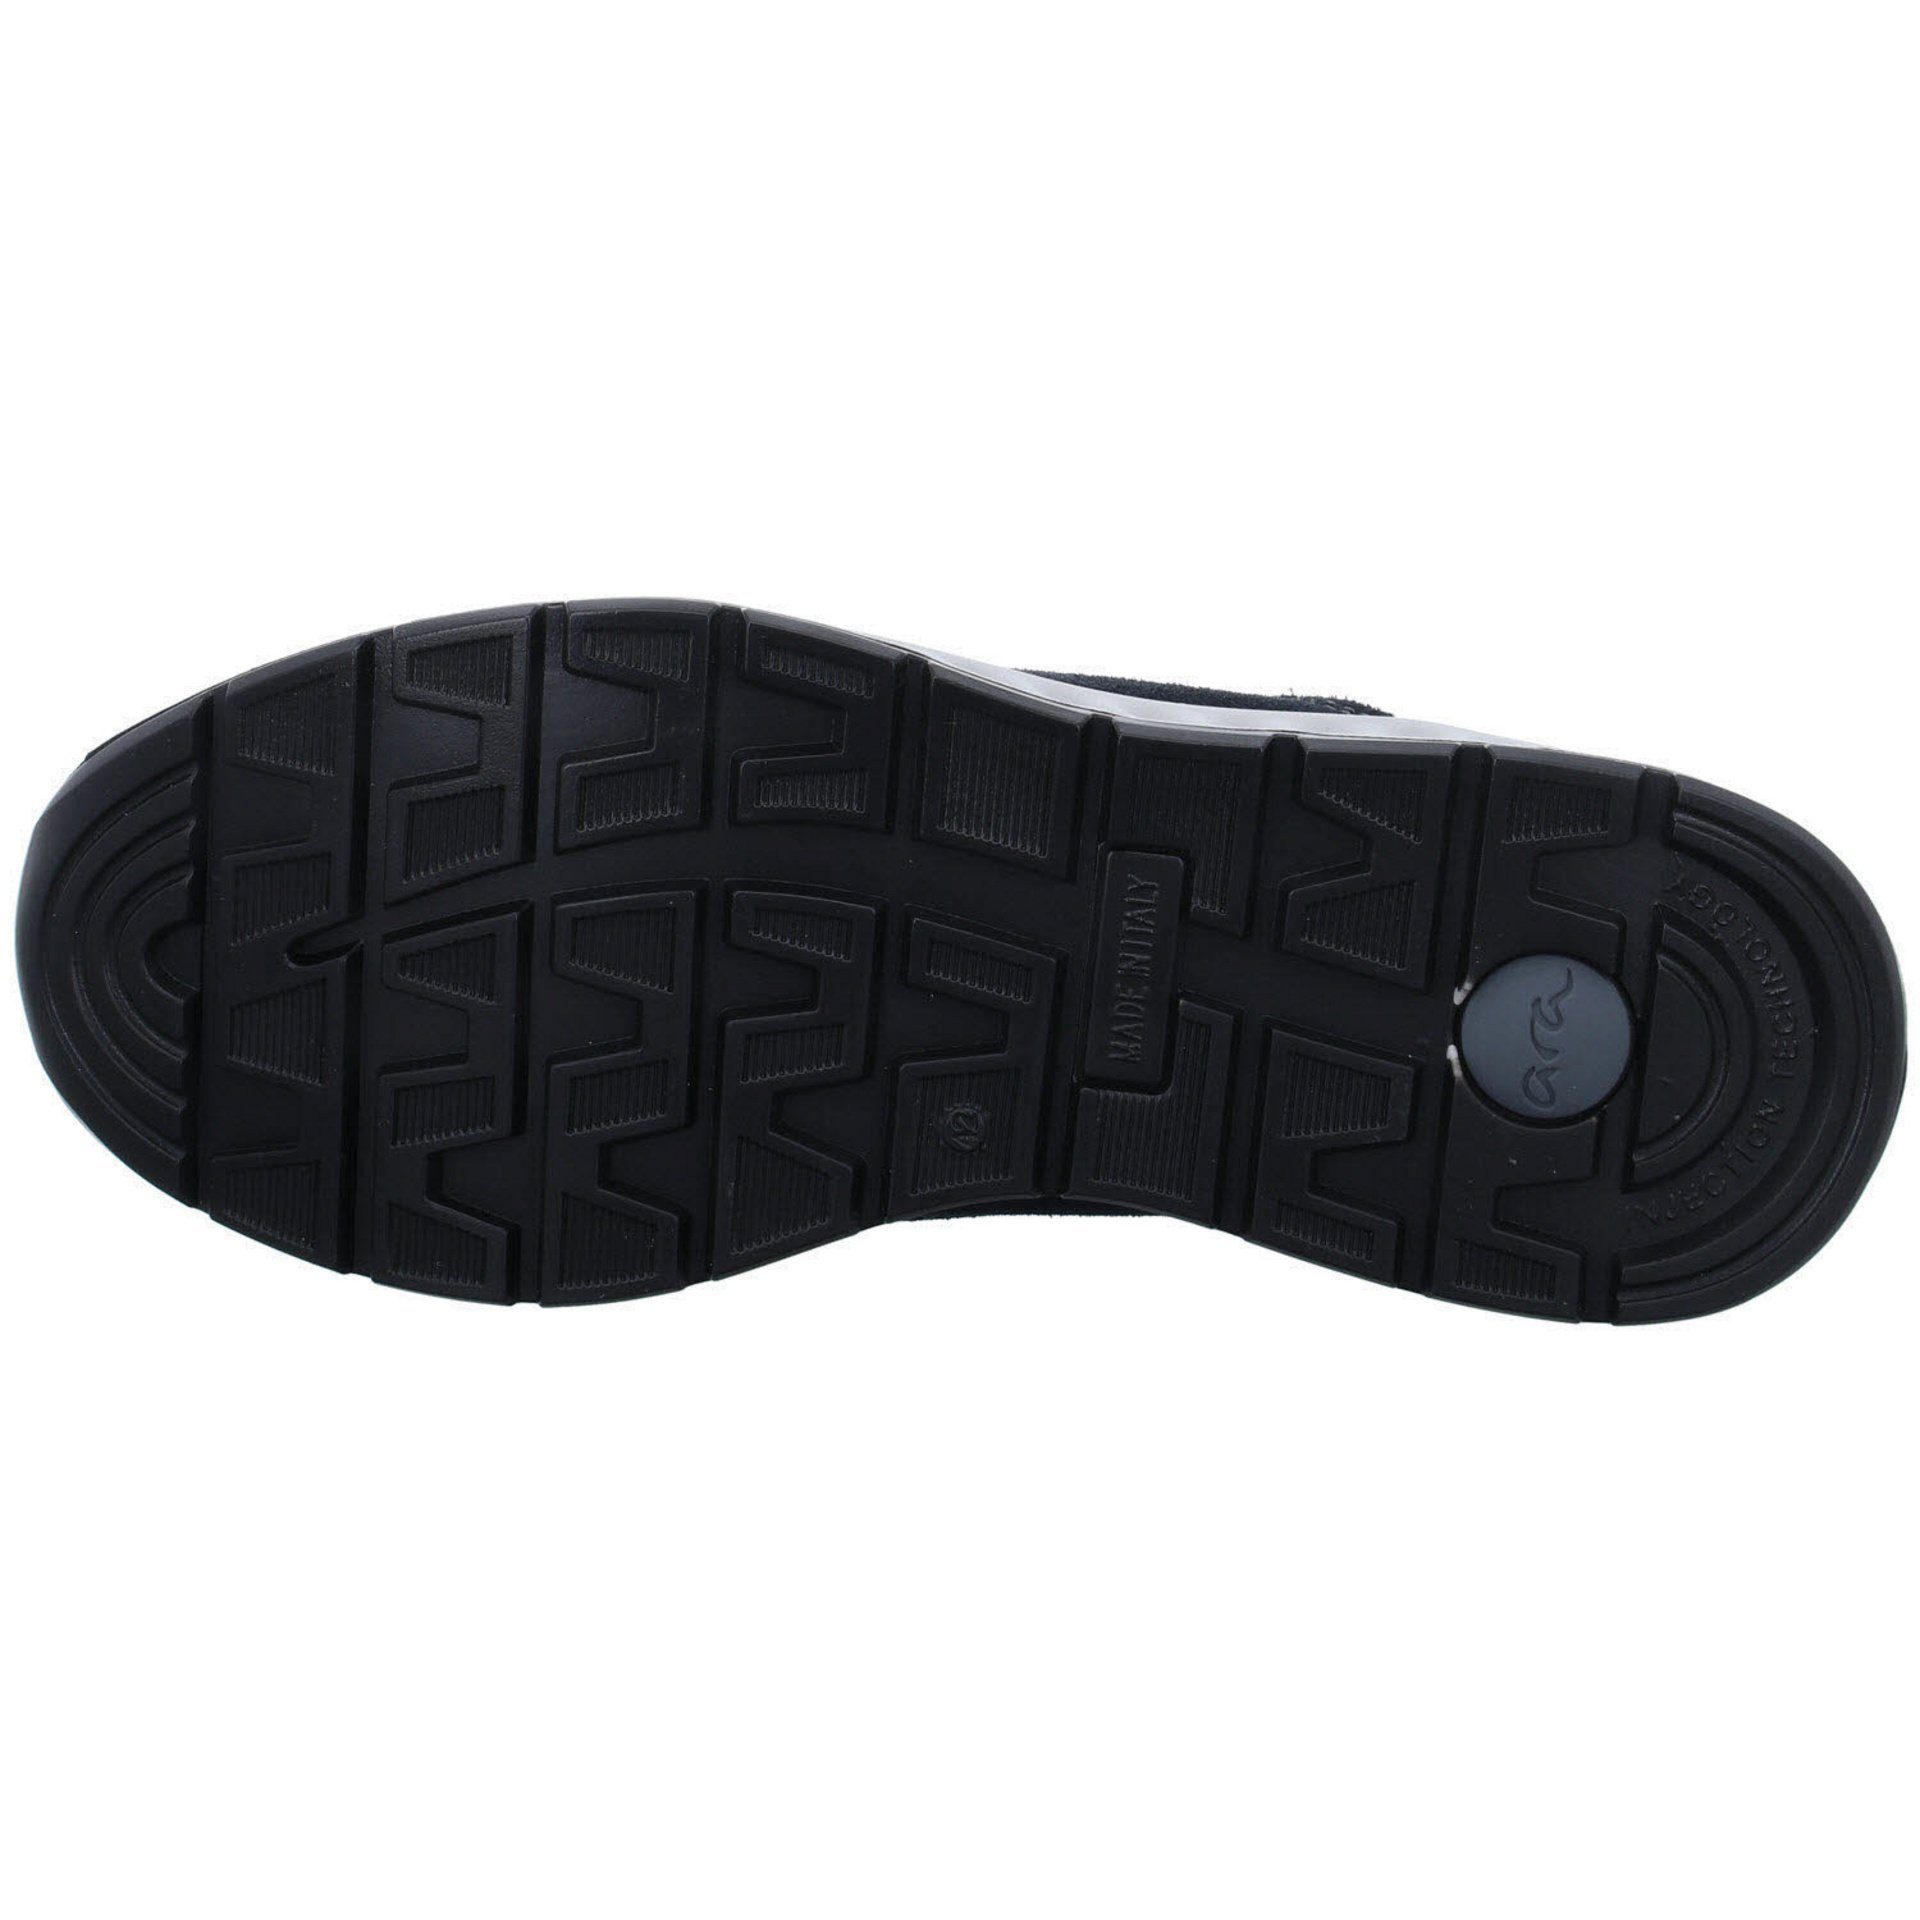 Ara Herren Sneaker Schuhe Paolo dunkel Lederkombination Schnürschuh Schnürschuh blau